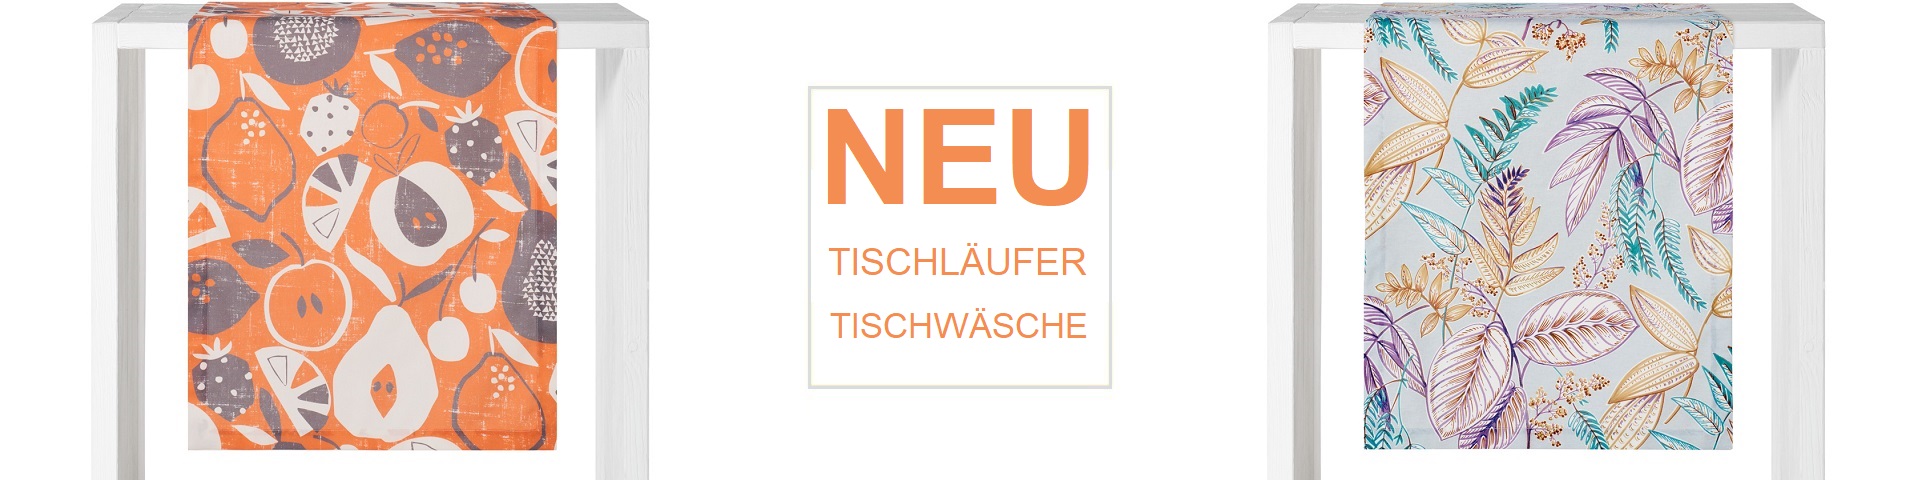 NEU Tischwäsche Tischläufer Kollektion-Fruehjahr Sommer 2023